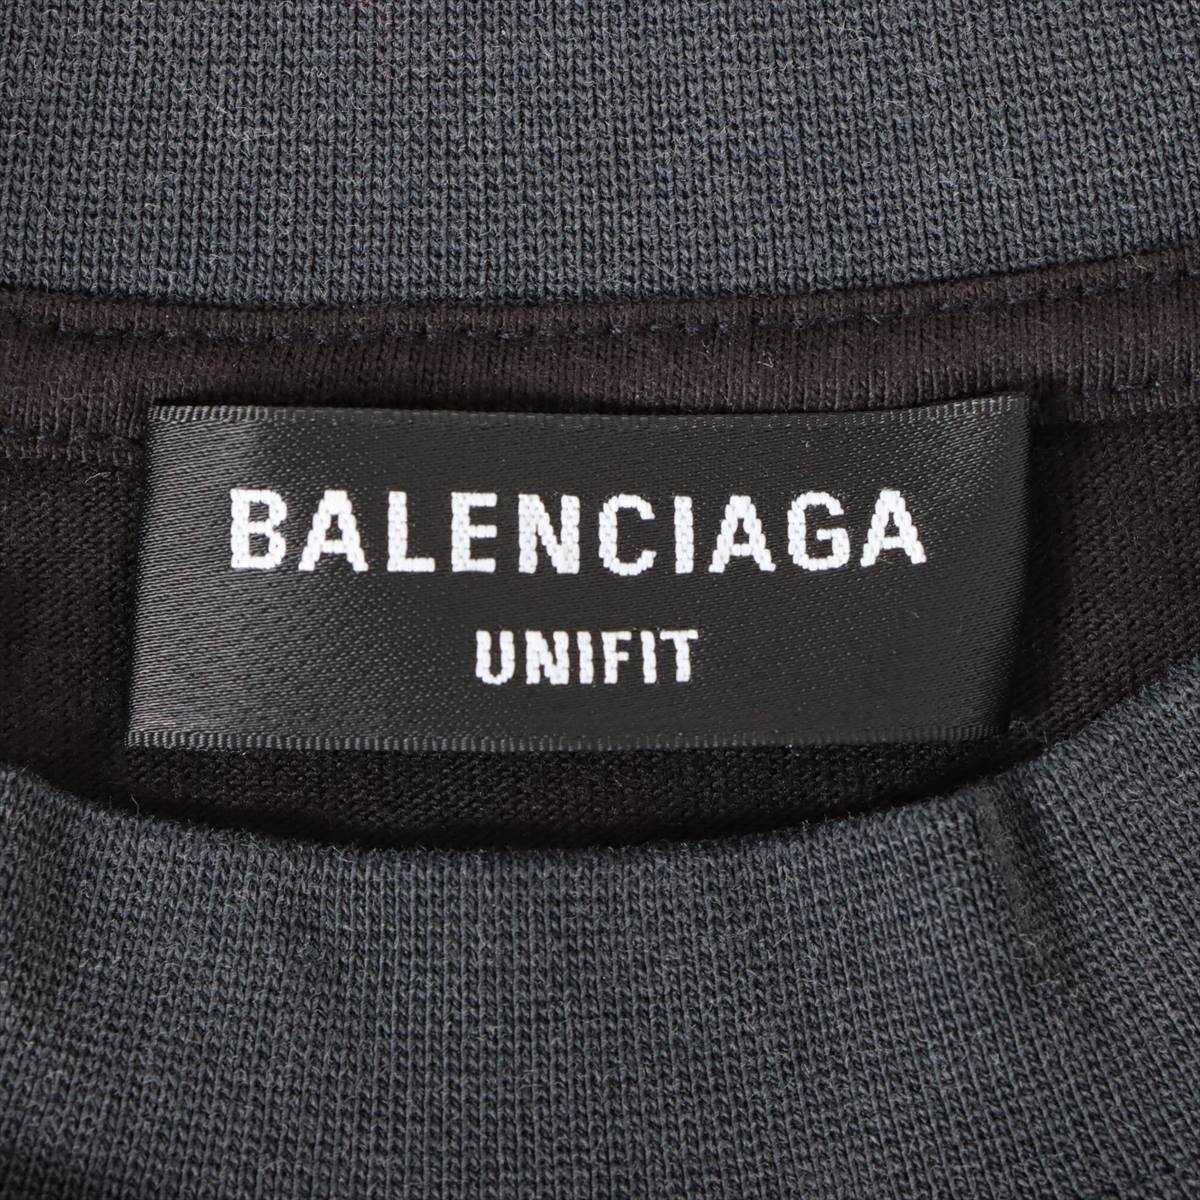 バレンシアガ 21年 コットン Tシャツ 3 ユニセックス ブラック×グレー  UPSIDE DOWN 698811 オーバーサイズクルーネック ユニフィット